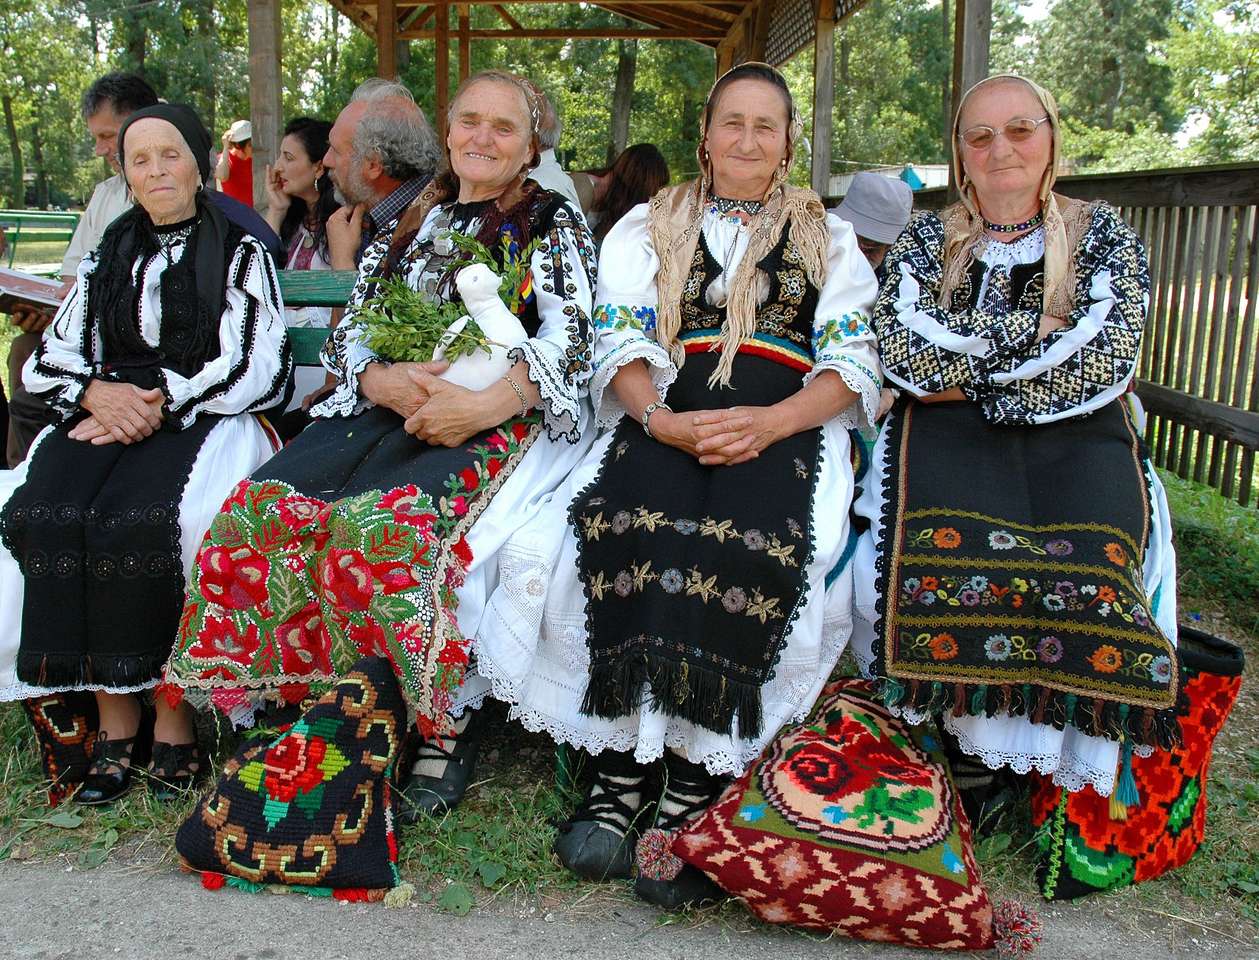 Femmes roumaines en costume folklorique puzzle en ligne